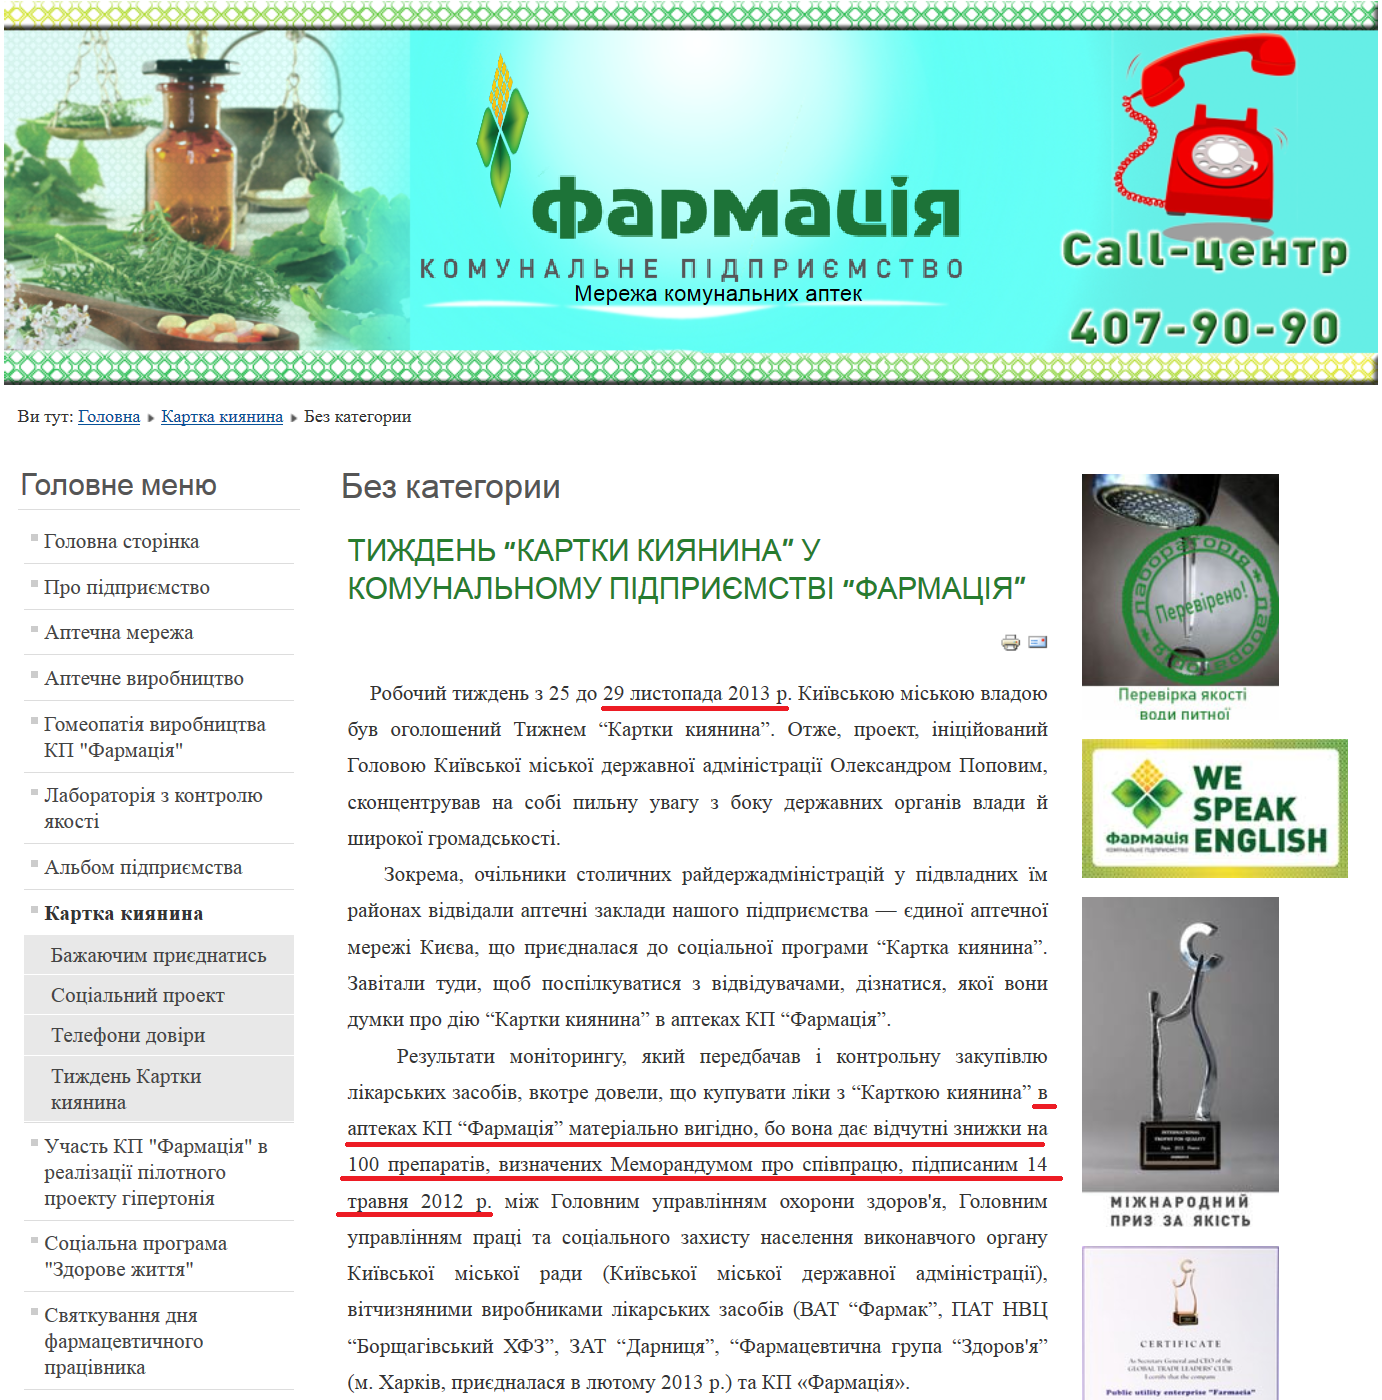 http://pharmacy.kiev.ua/uk/kartka-kiyanina/2-uncategorised